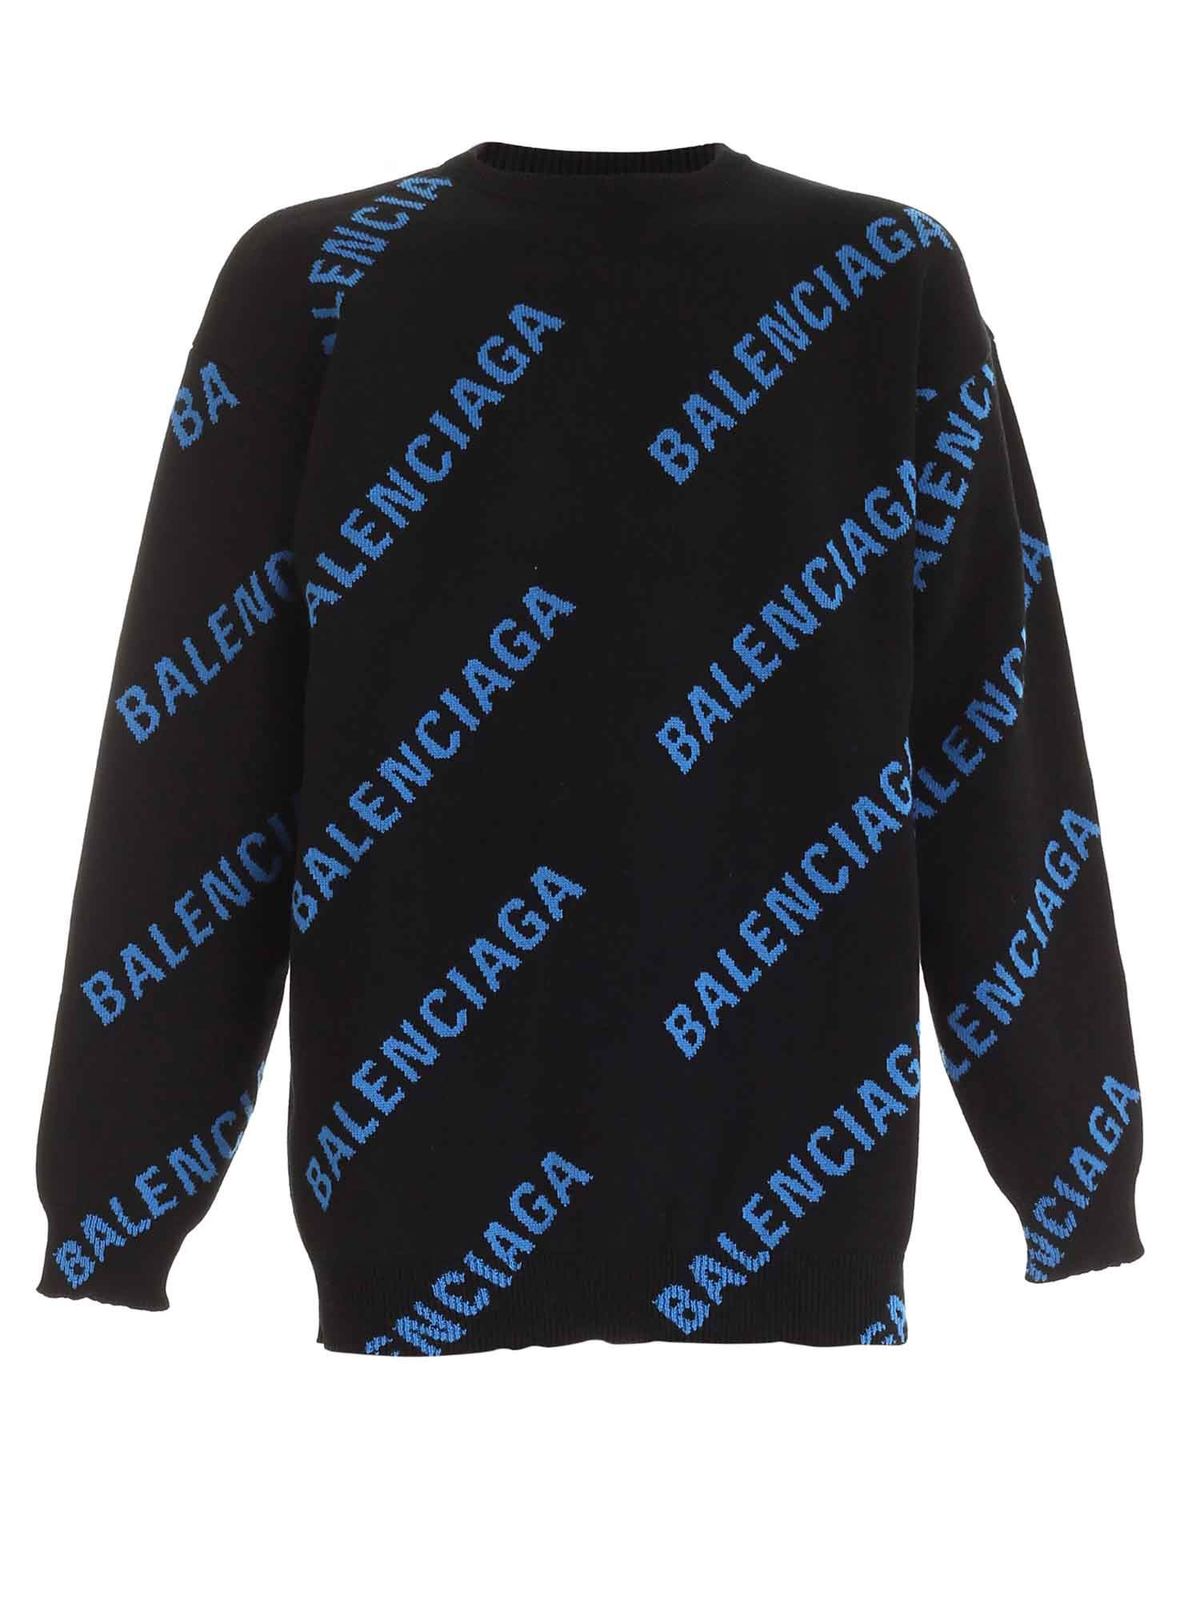 Balenciaga - All over logo pullover in 